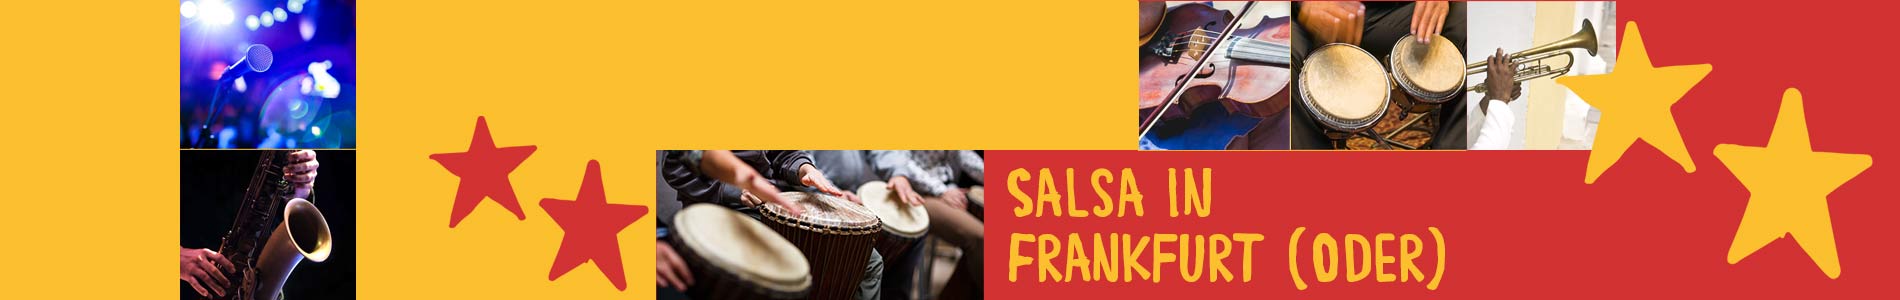 Salsa in Frankfurt (Oder) – Salsa lernen und tanzen, Tanzkurse, Partys, Veranstaltungen